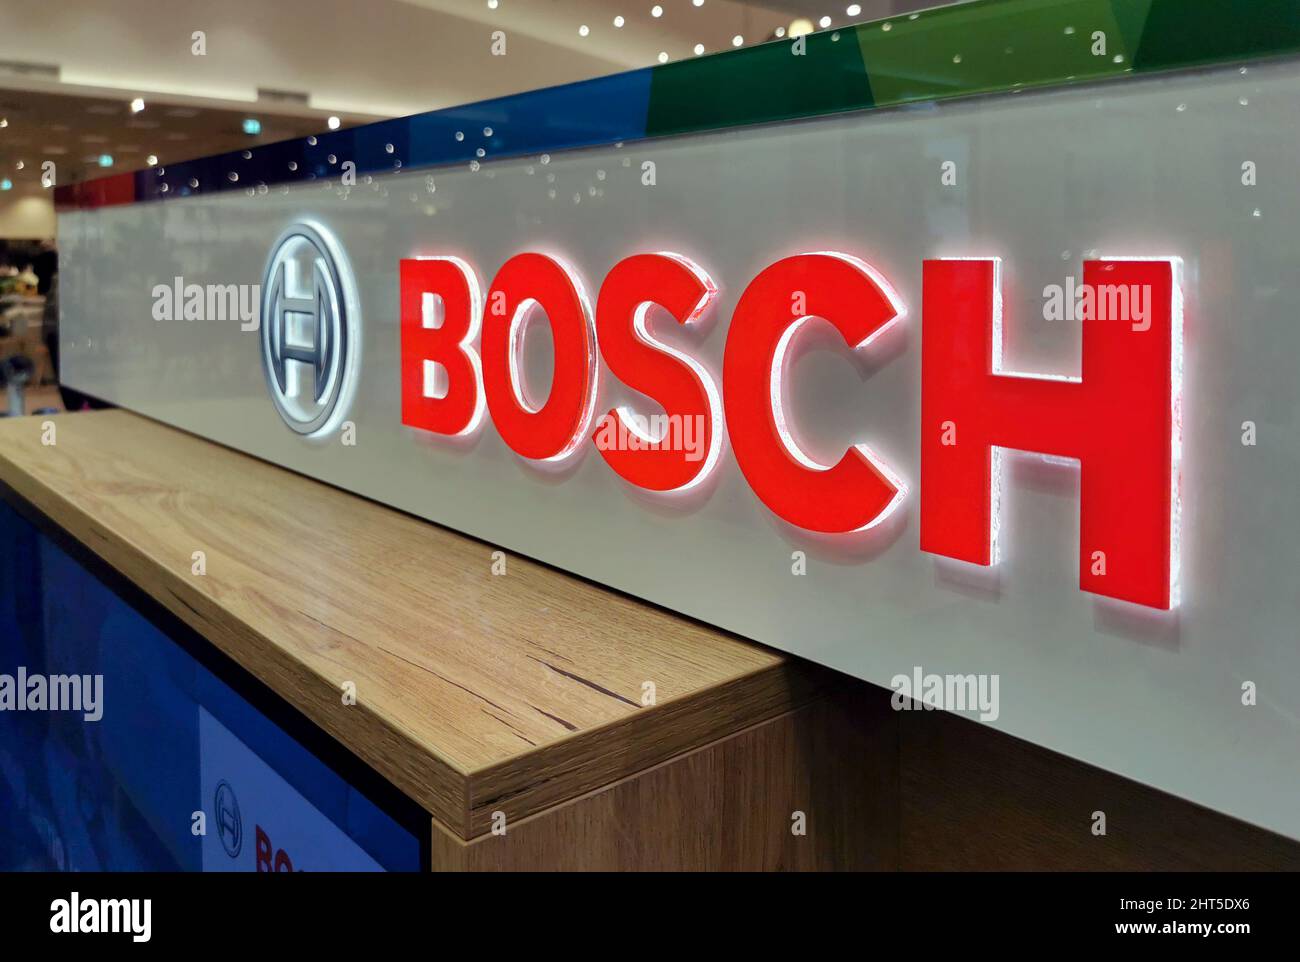 Primer plano de un logotipo de Bosch iluminado en rojo en la tienda de electrodomésticos y electrónica Foto de stock